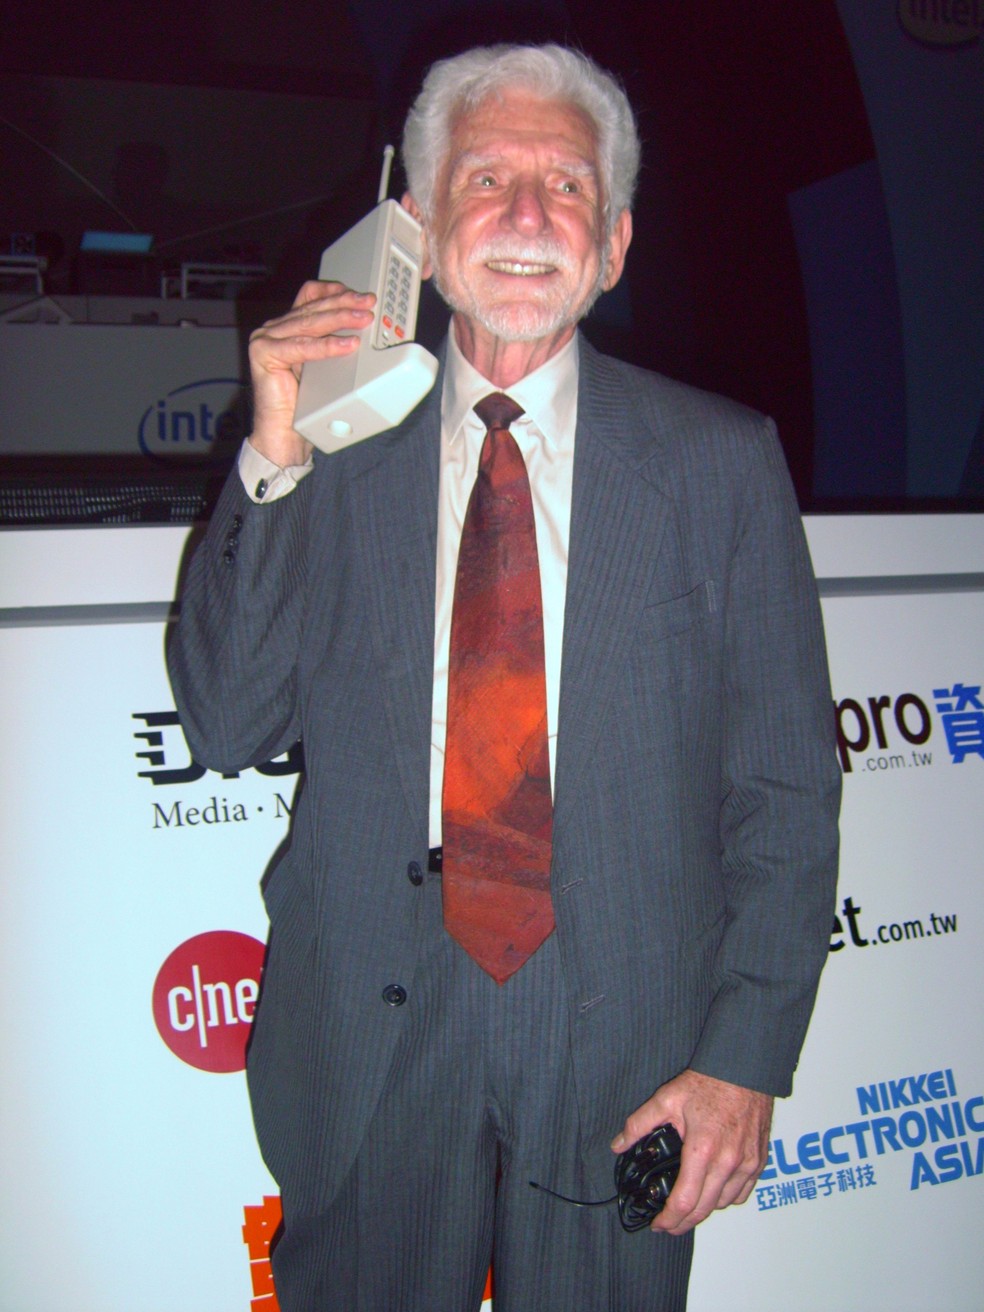 Marty Cooper, criador do primeiro celular, acredita que um dia teremos aparelhos acoplados na pele. — Foto: Rico Shen, CC BY-SA 3.0 <http://creativecommons.org/licenses/by-sa/3.0/>, via Wikimedia Commons